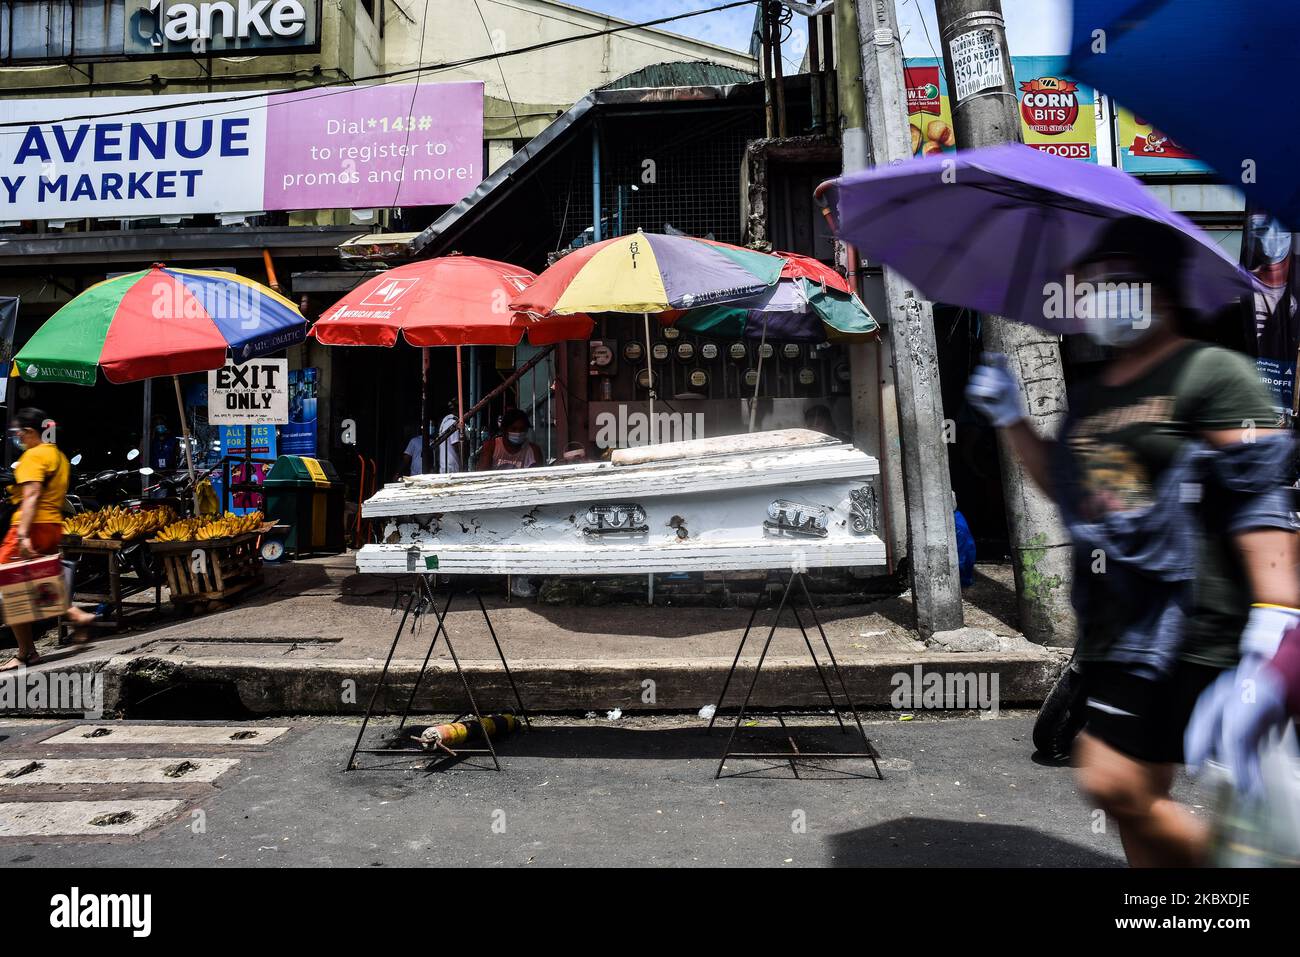 Am 22. August 2020 wird vor einem öffentlichen Markt in Quezon City, Philippinen, ein Sarg ausgestellt. Die Gesamtzahl der COVID-19-Fälle auf den Philippinen stieg auf 187.249, nachdem 4.933 neue Fälle registriert wurden. (Foto: Lisa Marie David/NurPhoto) Stockfoto